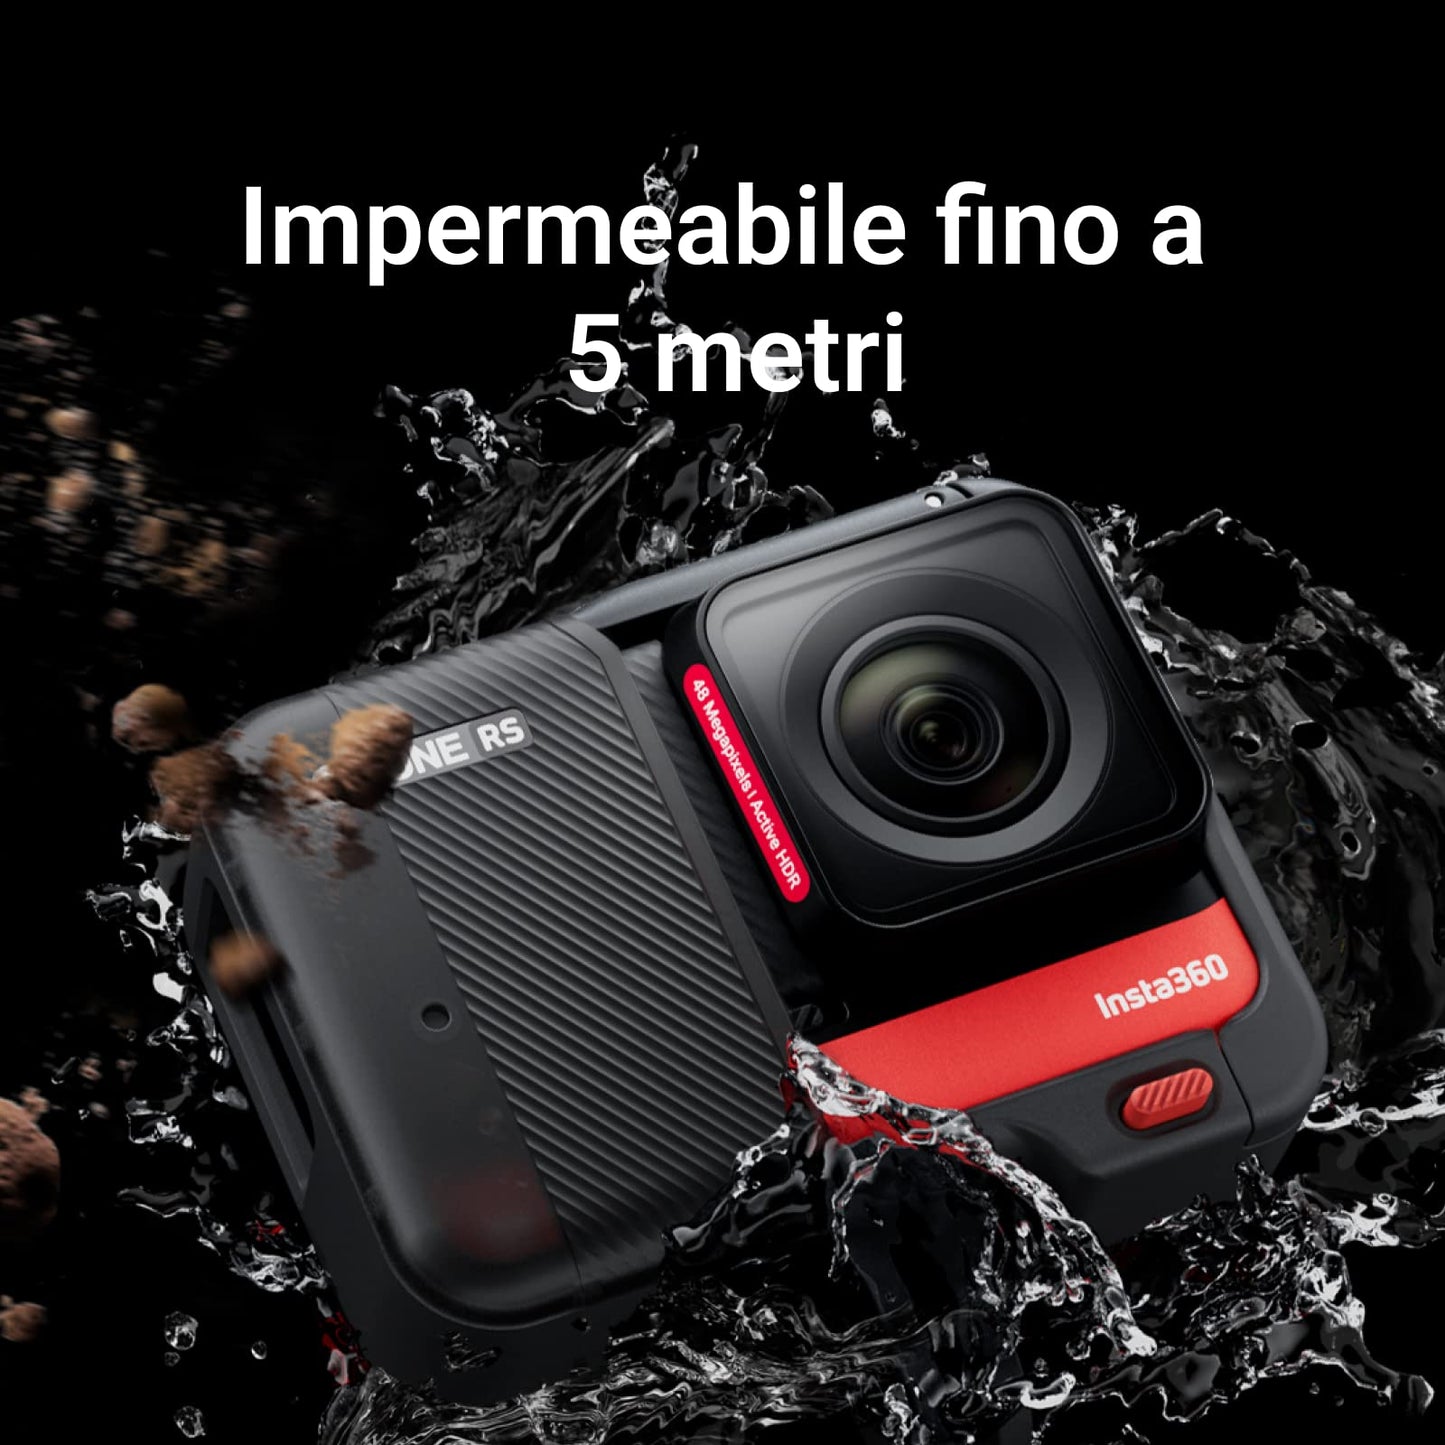 Insta360 ONE RS Twin Edition - Action Cam Impermeabile 4K 60fps & 5.7K con obiettivi intercambiabili